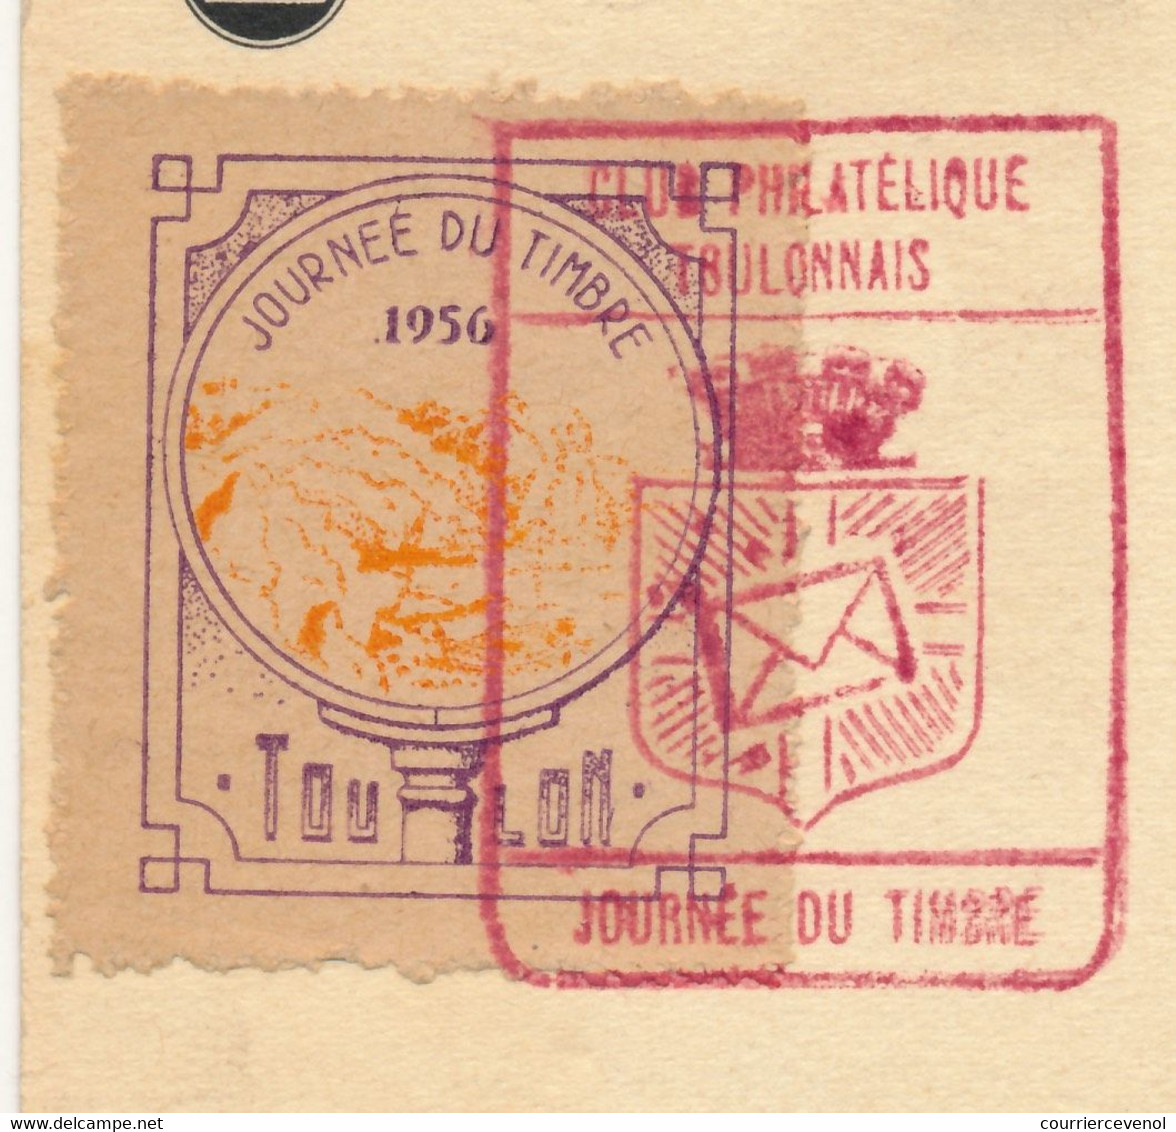 FRANCE => Vignette "Journée Du Timbre 1956 TOULON" Sur Carte Fédérale 12F + 3F François De Tassis - Toulon 1956 - Expositions Philatéliques